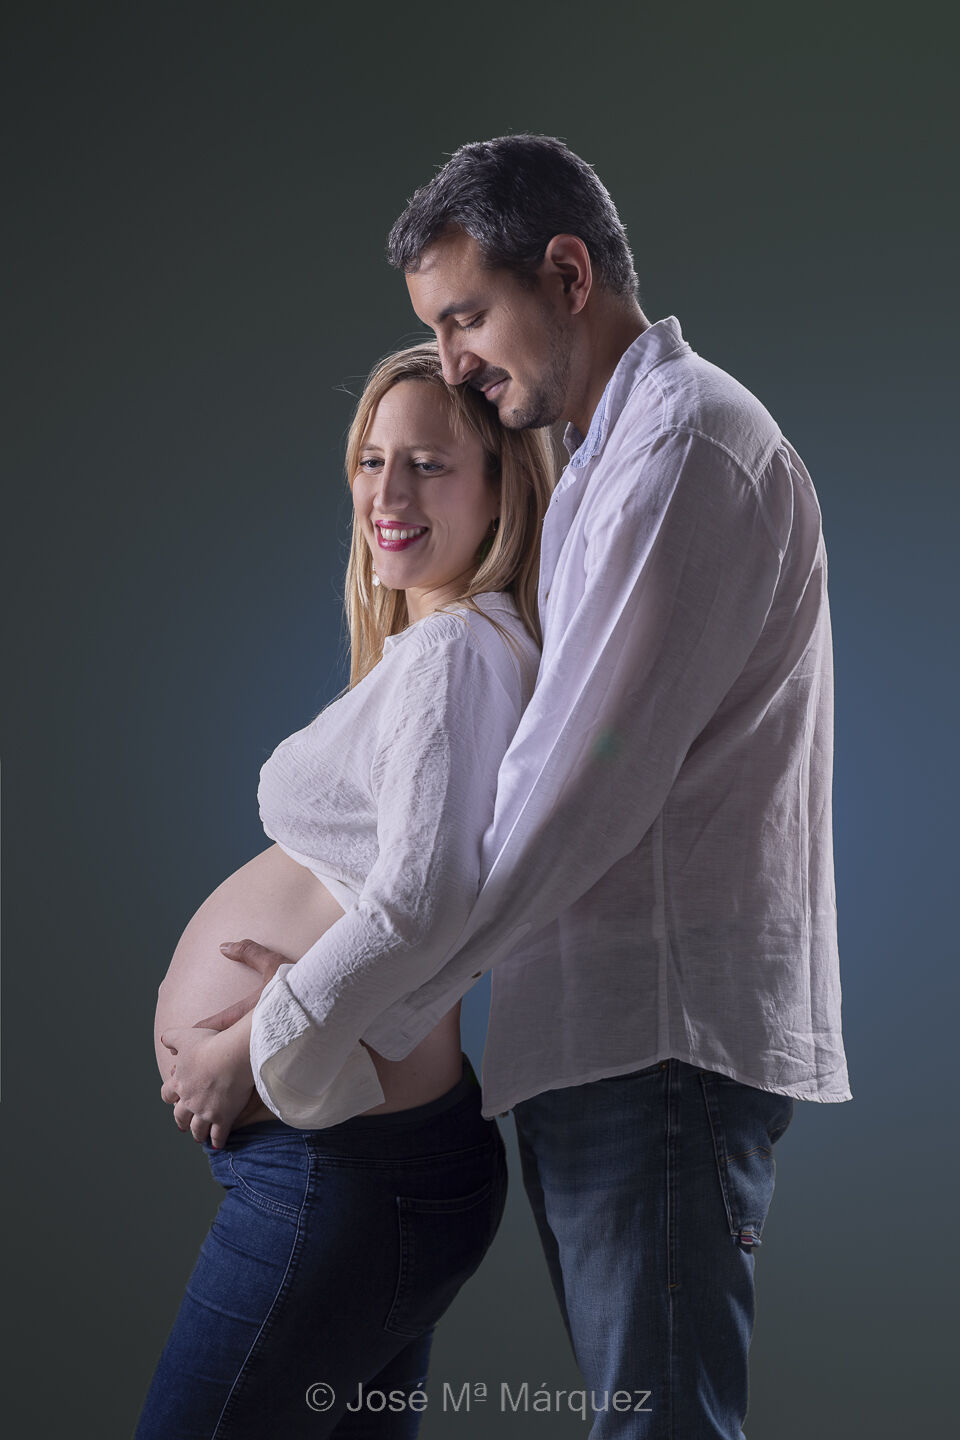 Sesión de embarazo en estudio. El chico abraza desde atrás a su mujer embarazada rodeando el vientre con sus brazos.